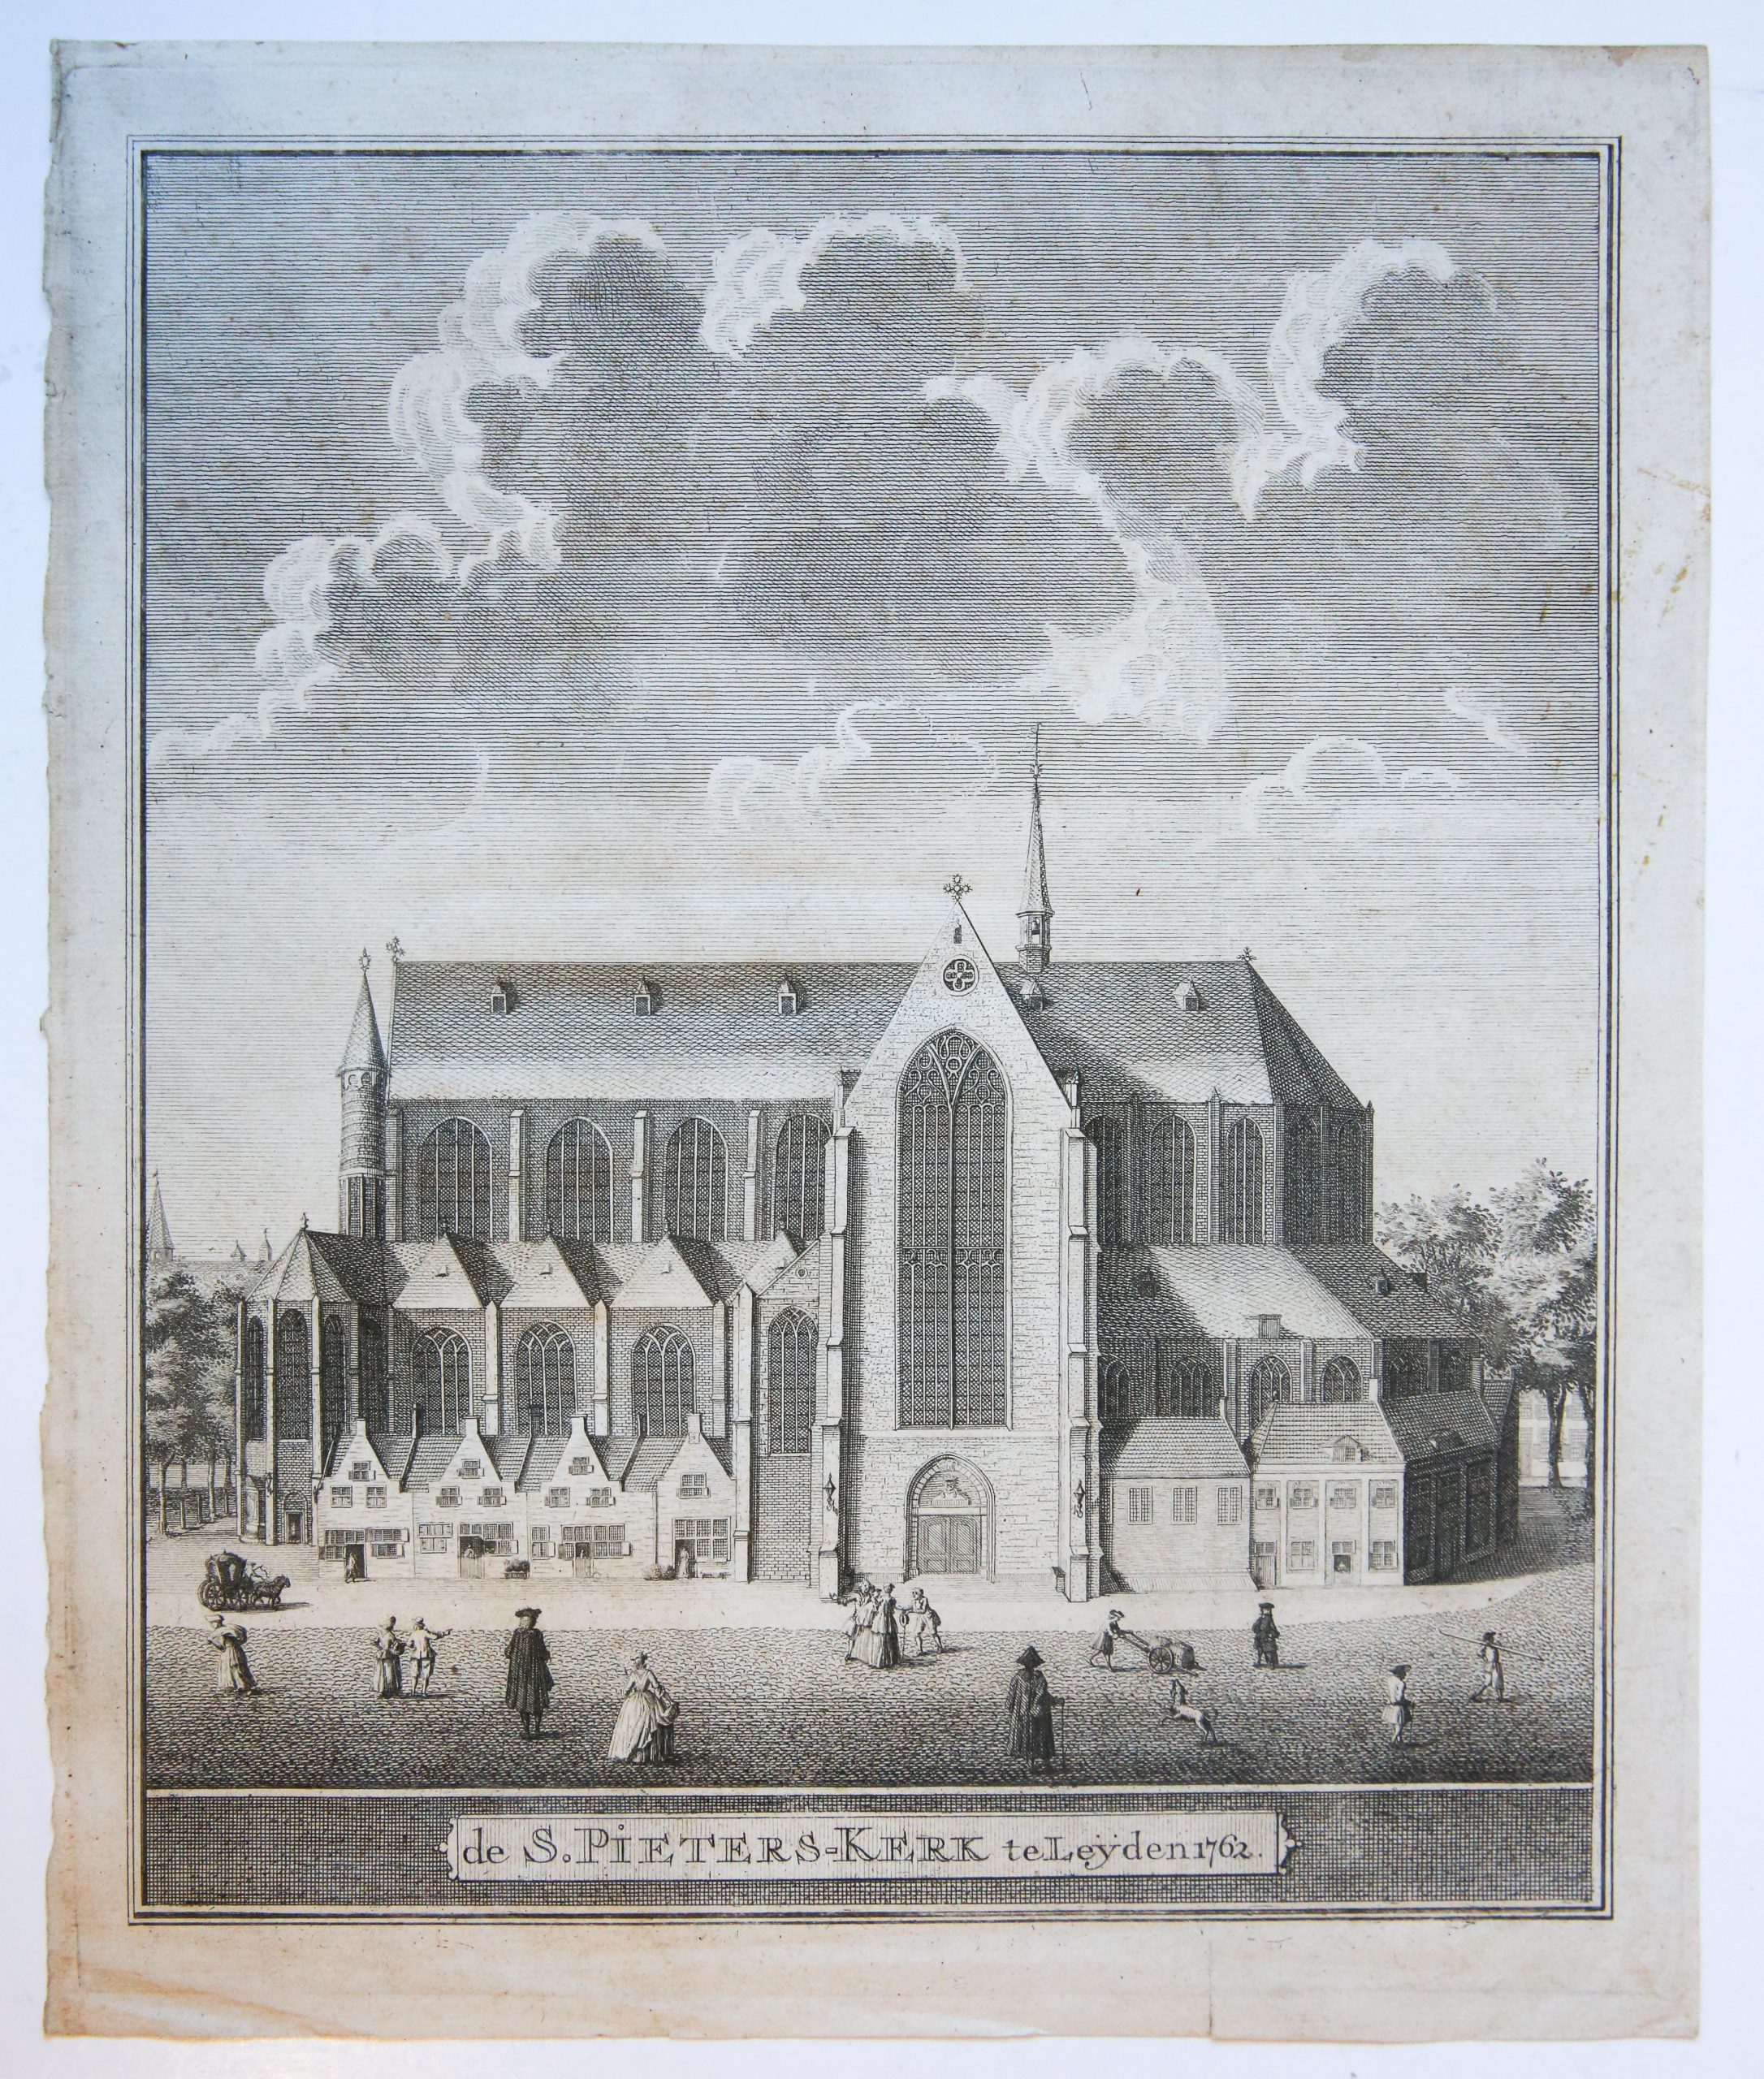 Etching/Ets: De S. Pieters-kerk te Leyden 1762. (Sint Pieterskerk te Leiden naar de situatie van 1762). Mogelijk afkomstig uit: F. van Mieris, Beschryving der stad Leyden, haare gelegenheid, oorsprong, vergrootinge, etc., deel 1, Leyden, Wed. A. Honkoop & C. van Hoogeveen Jr., 1762, deel 2, idem, 1784; deel 3, bewerkt en aangevuld door D. van Alphen: Leyden, C. Heyligert & A. en J. Honkoop, 1784.